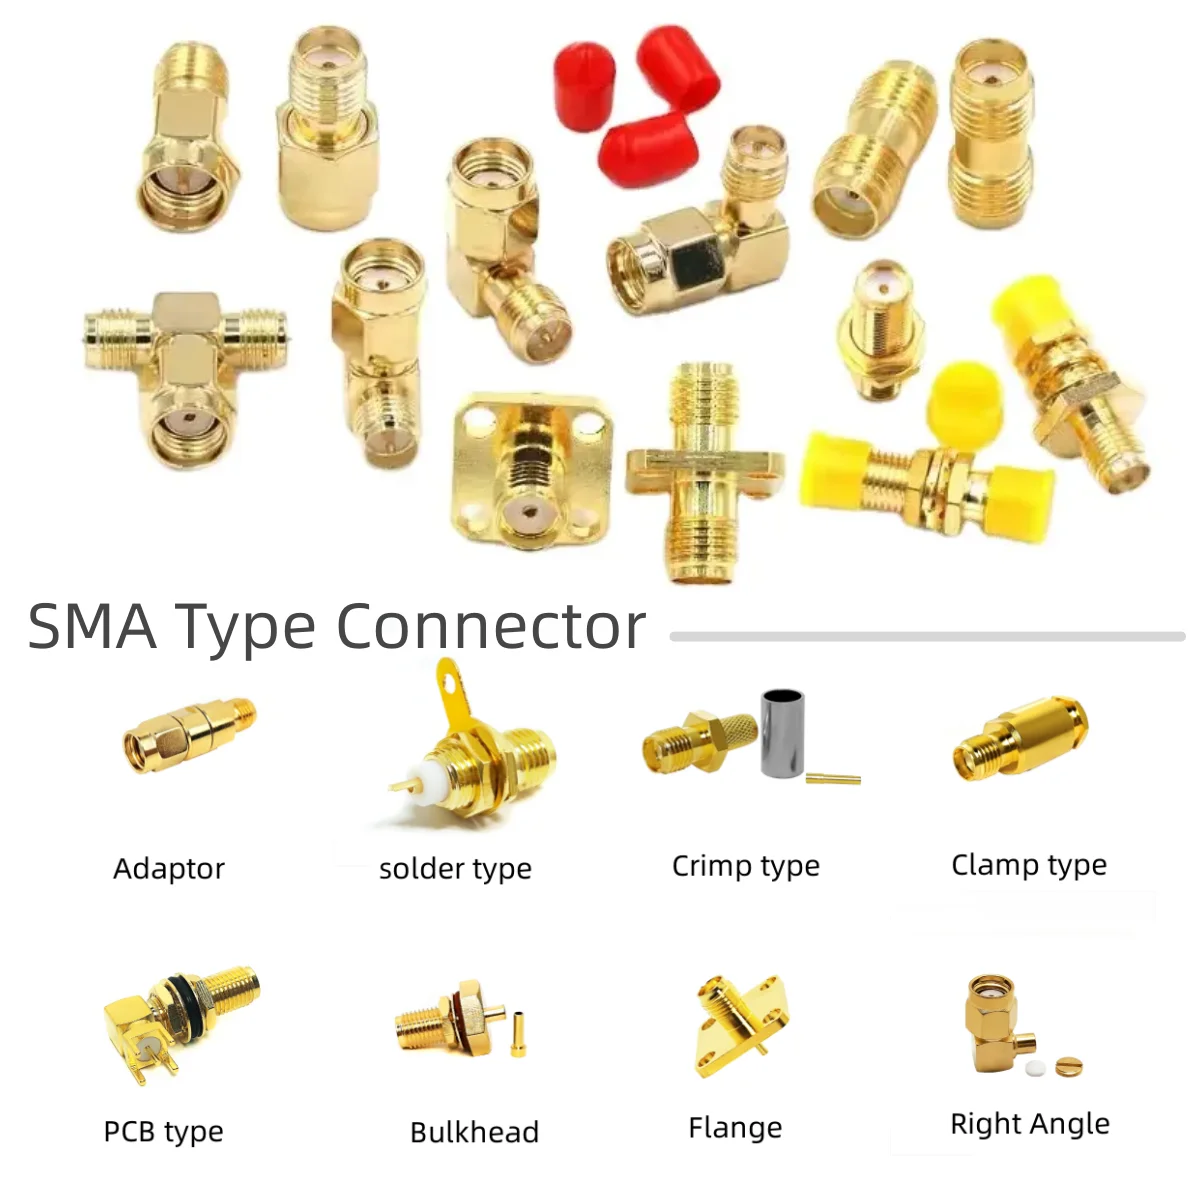 SMA RF Connector sma lmr195/sma RG142/sma RG214/sma 047/sma RG393/sma 174/sma RG316/sma RG141/sma RG178/sma 086/sma lmr400 supplier